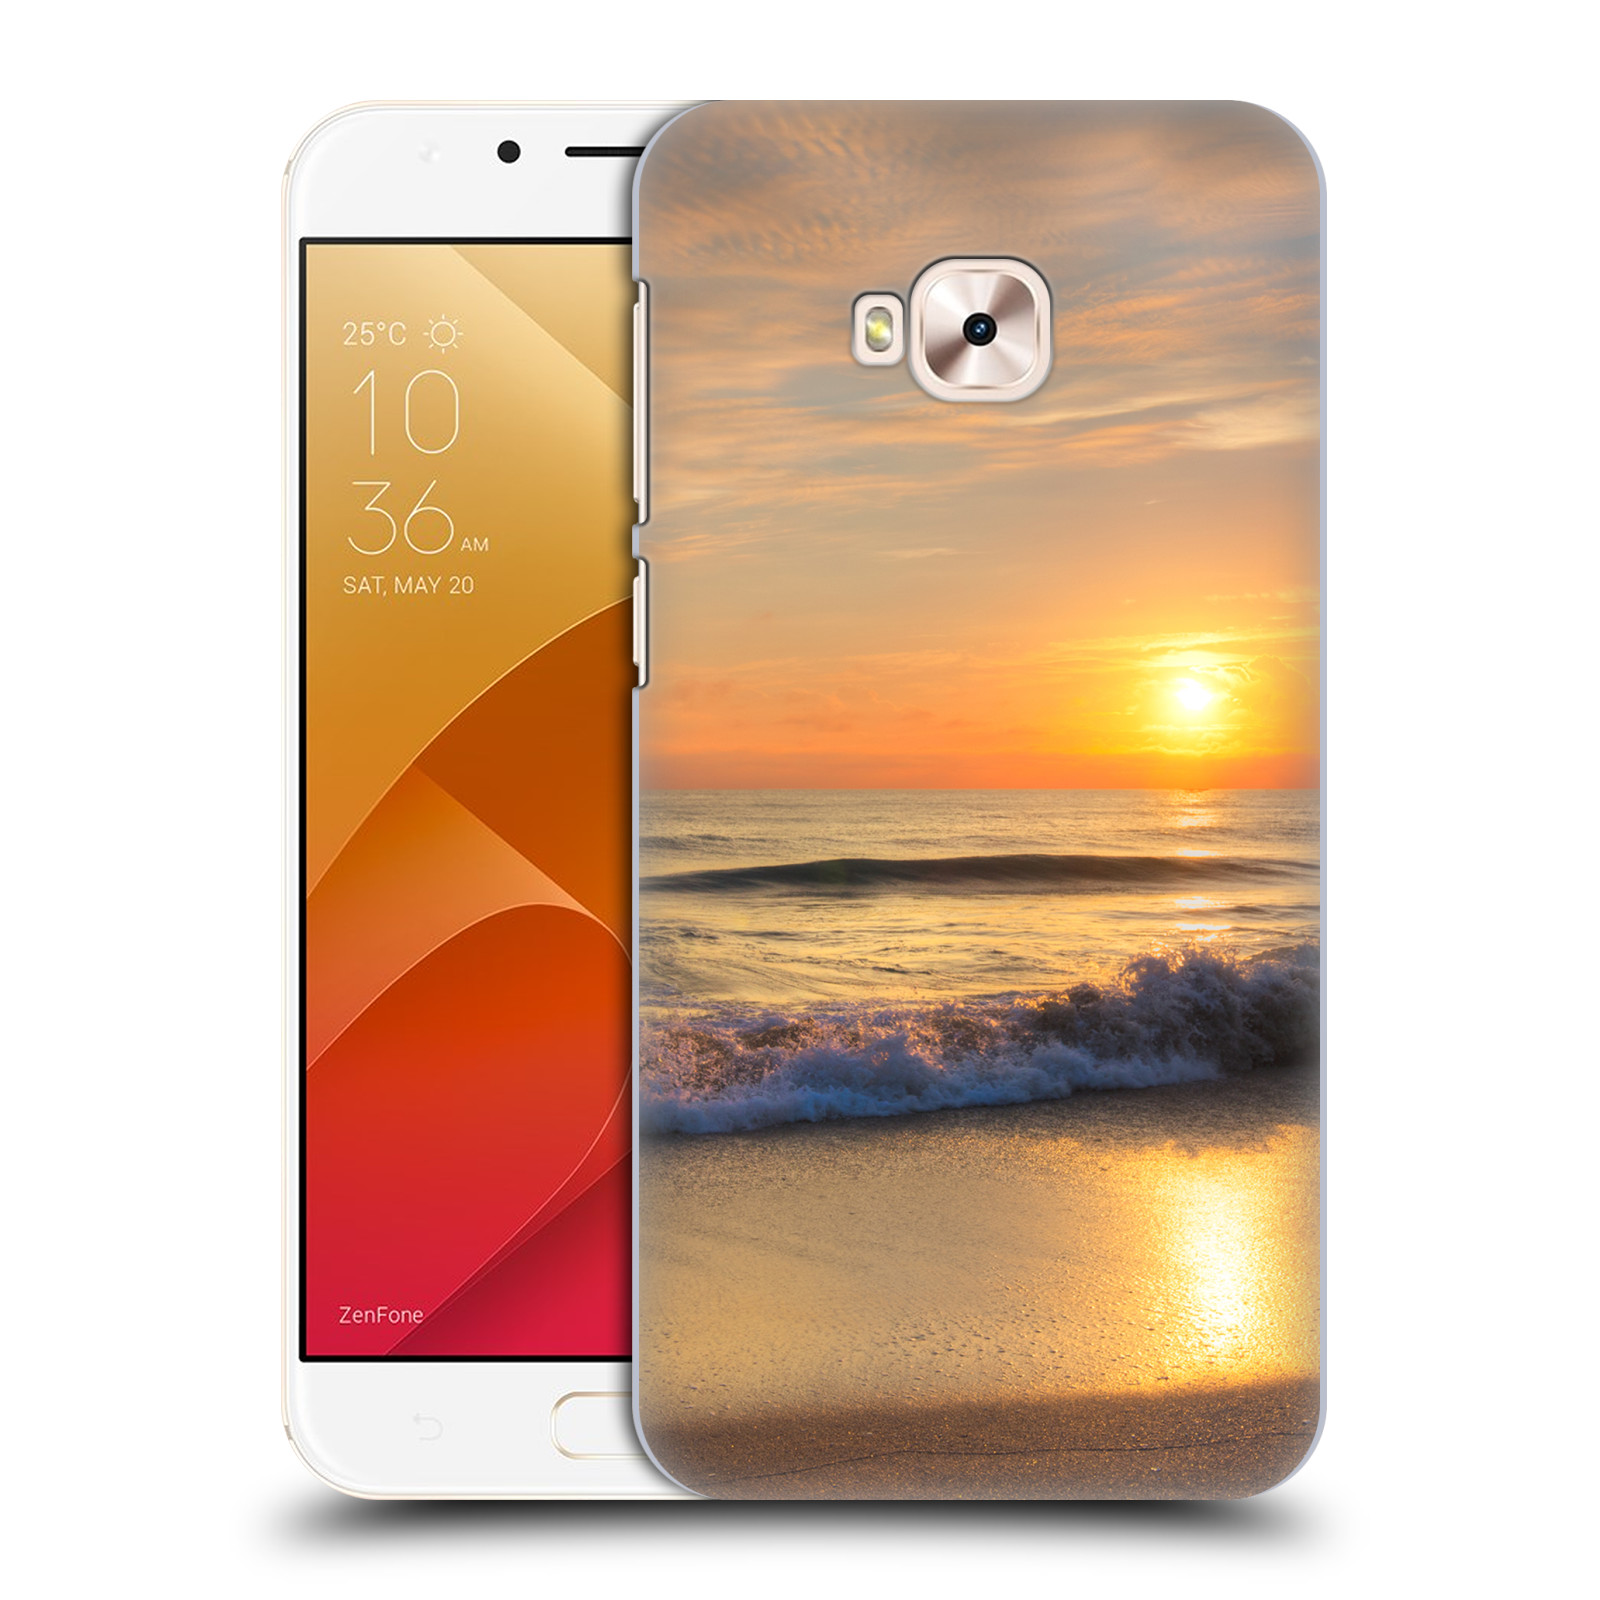 Zadní obal pro mobil Asus Zenfone 4 Selfie Pro ZD552KL - HEAD CASE - Krásy přirody - Nádherná pláž